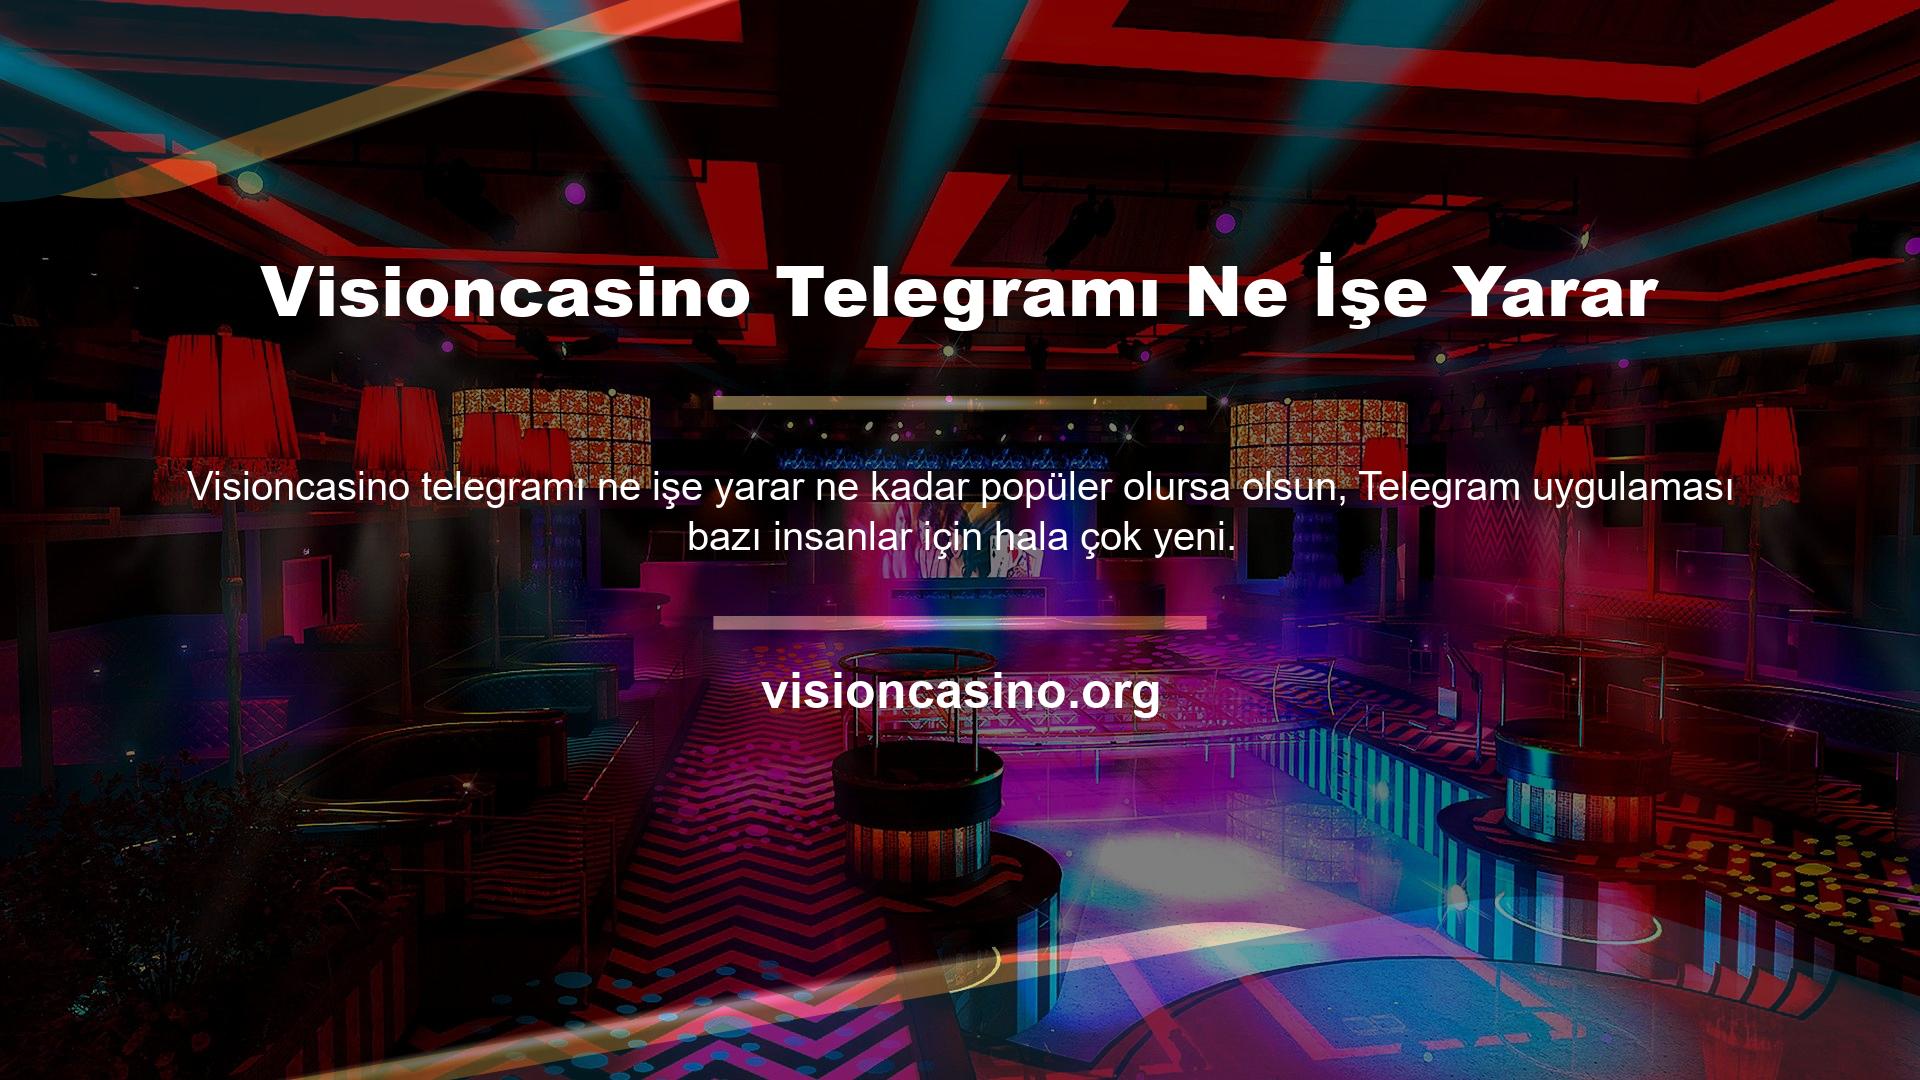 Bu yenilik sayesinde Visioncasino Telegram ne için kullanılıyor sorusuna verdiği yanıt oldukça ilginç